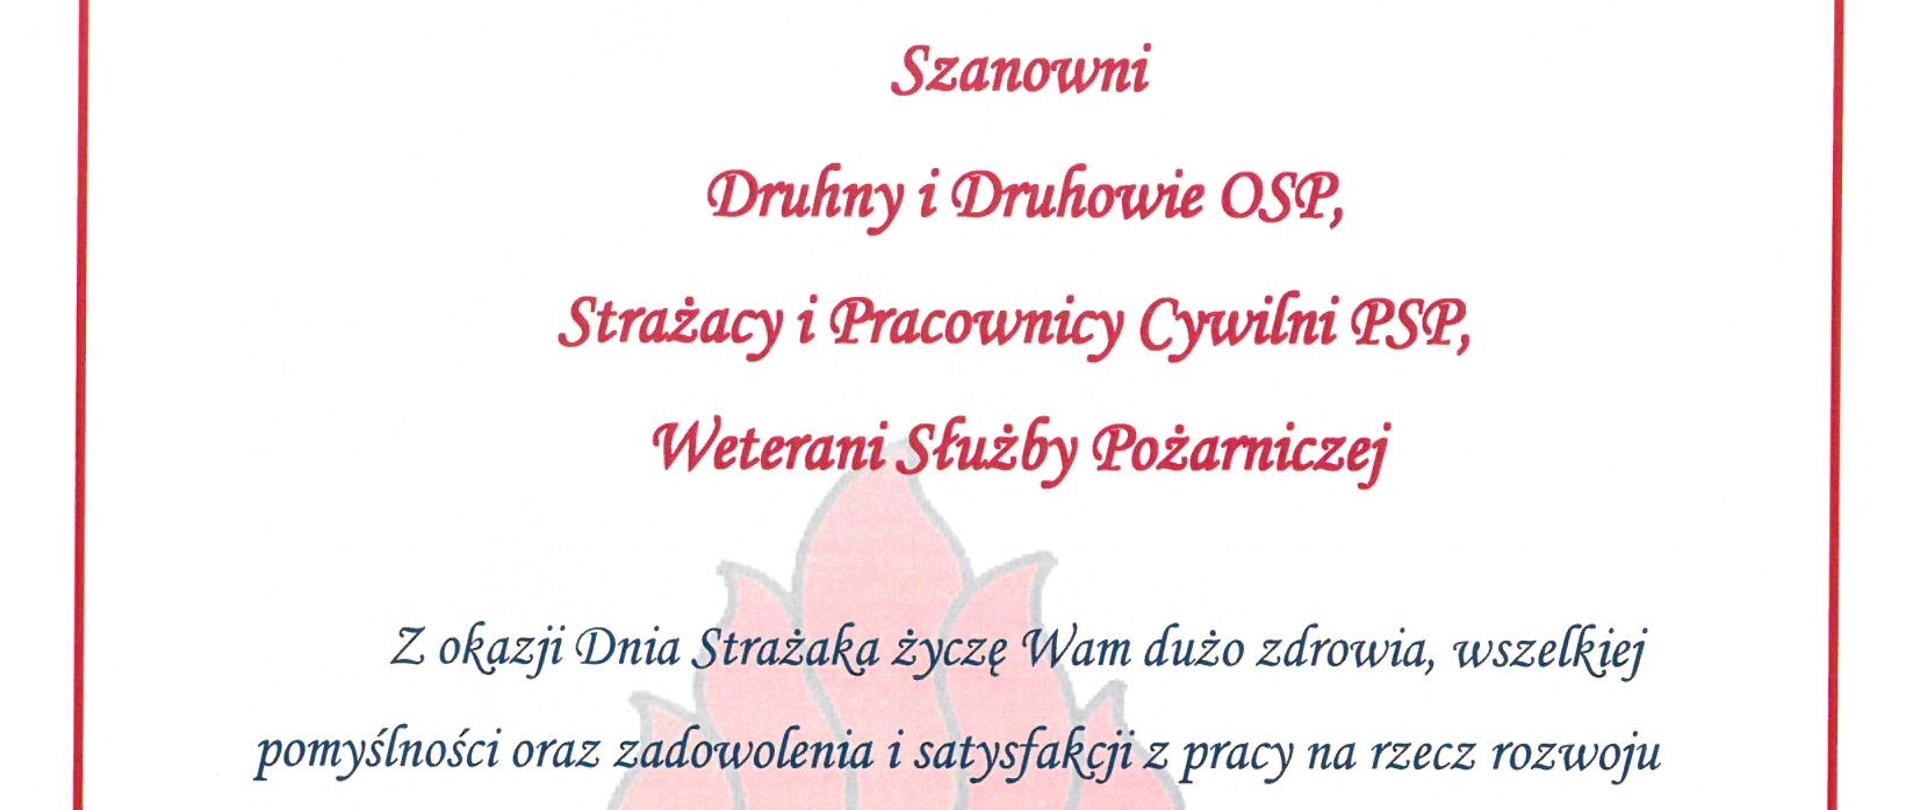 Życzenia Komendanta Wojewódzkiego PSP w Olsztynie z okazji dnia strażaka